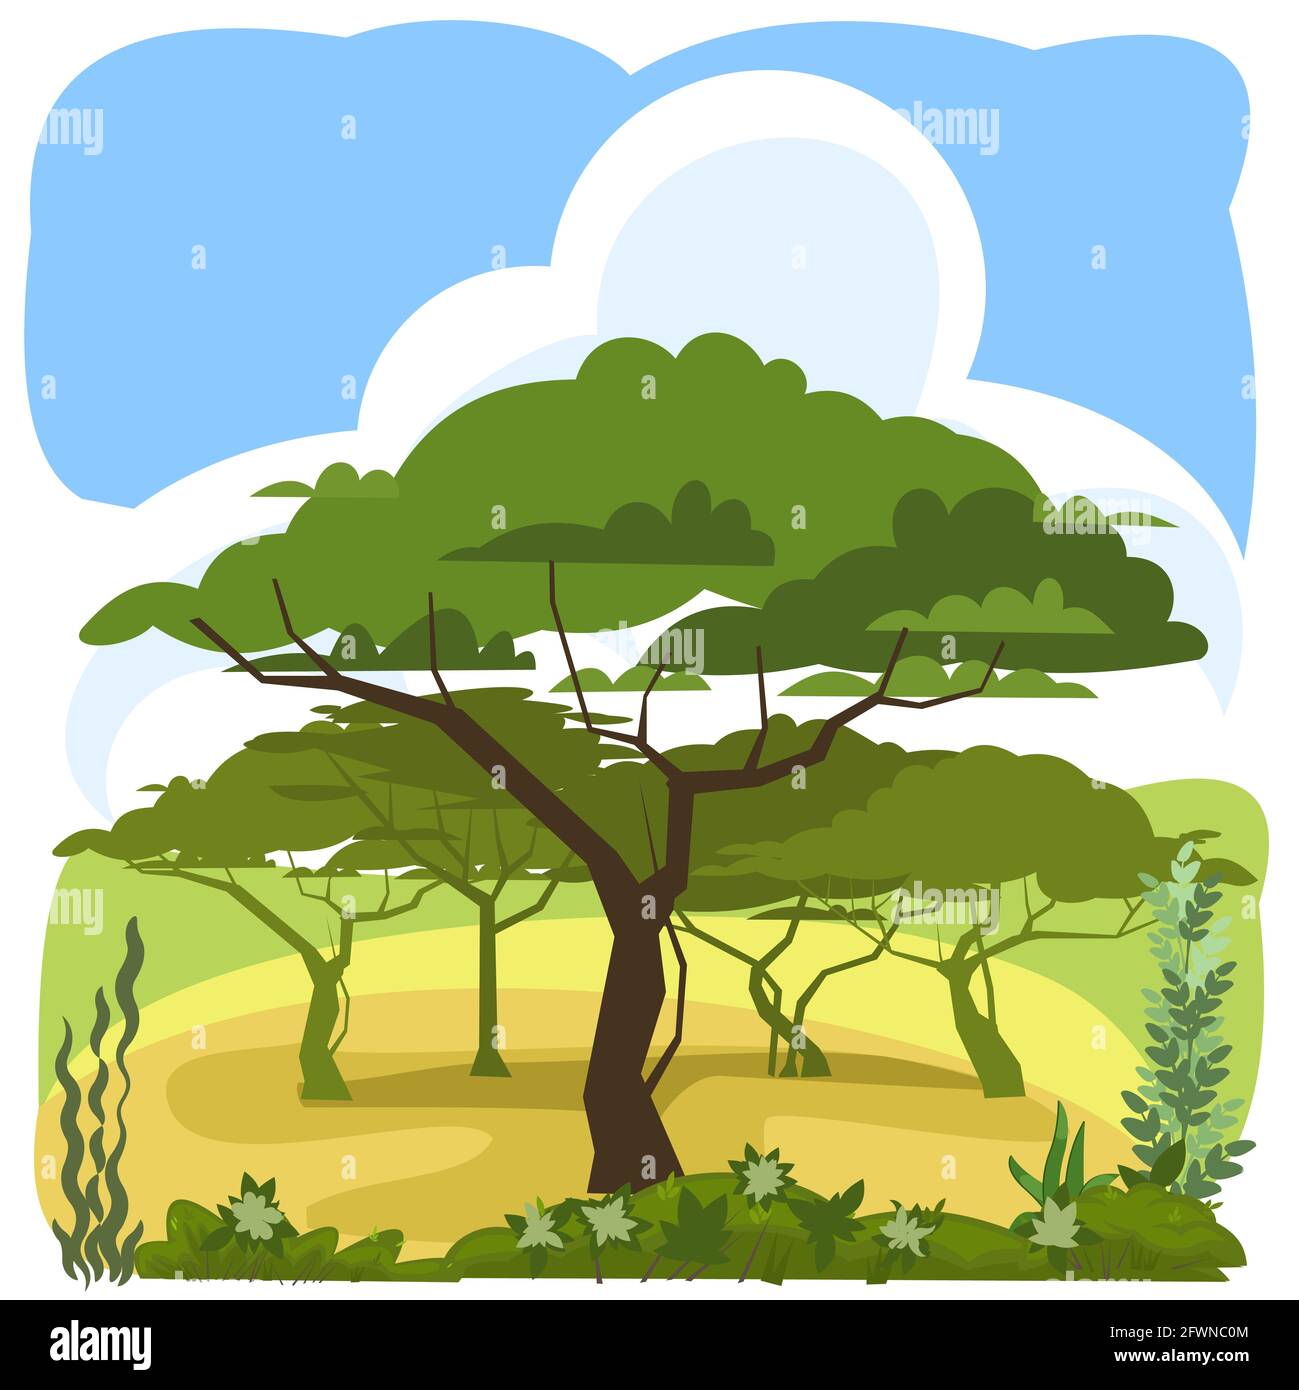 Acacia. Paysage rural vert avec arbres. Style dessin animé plat. L'illustration est isolée sur un fond blanc. Vecteur Illustration de Vecteur